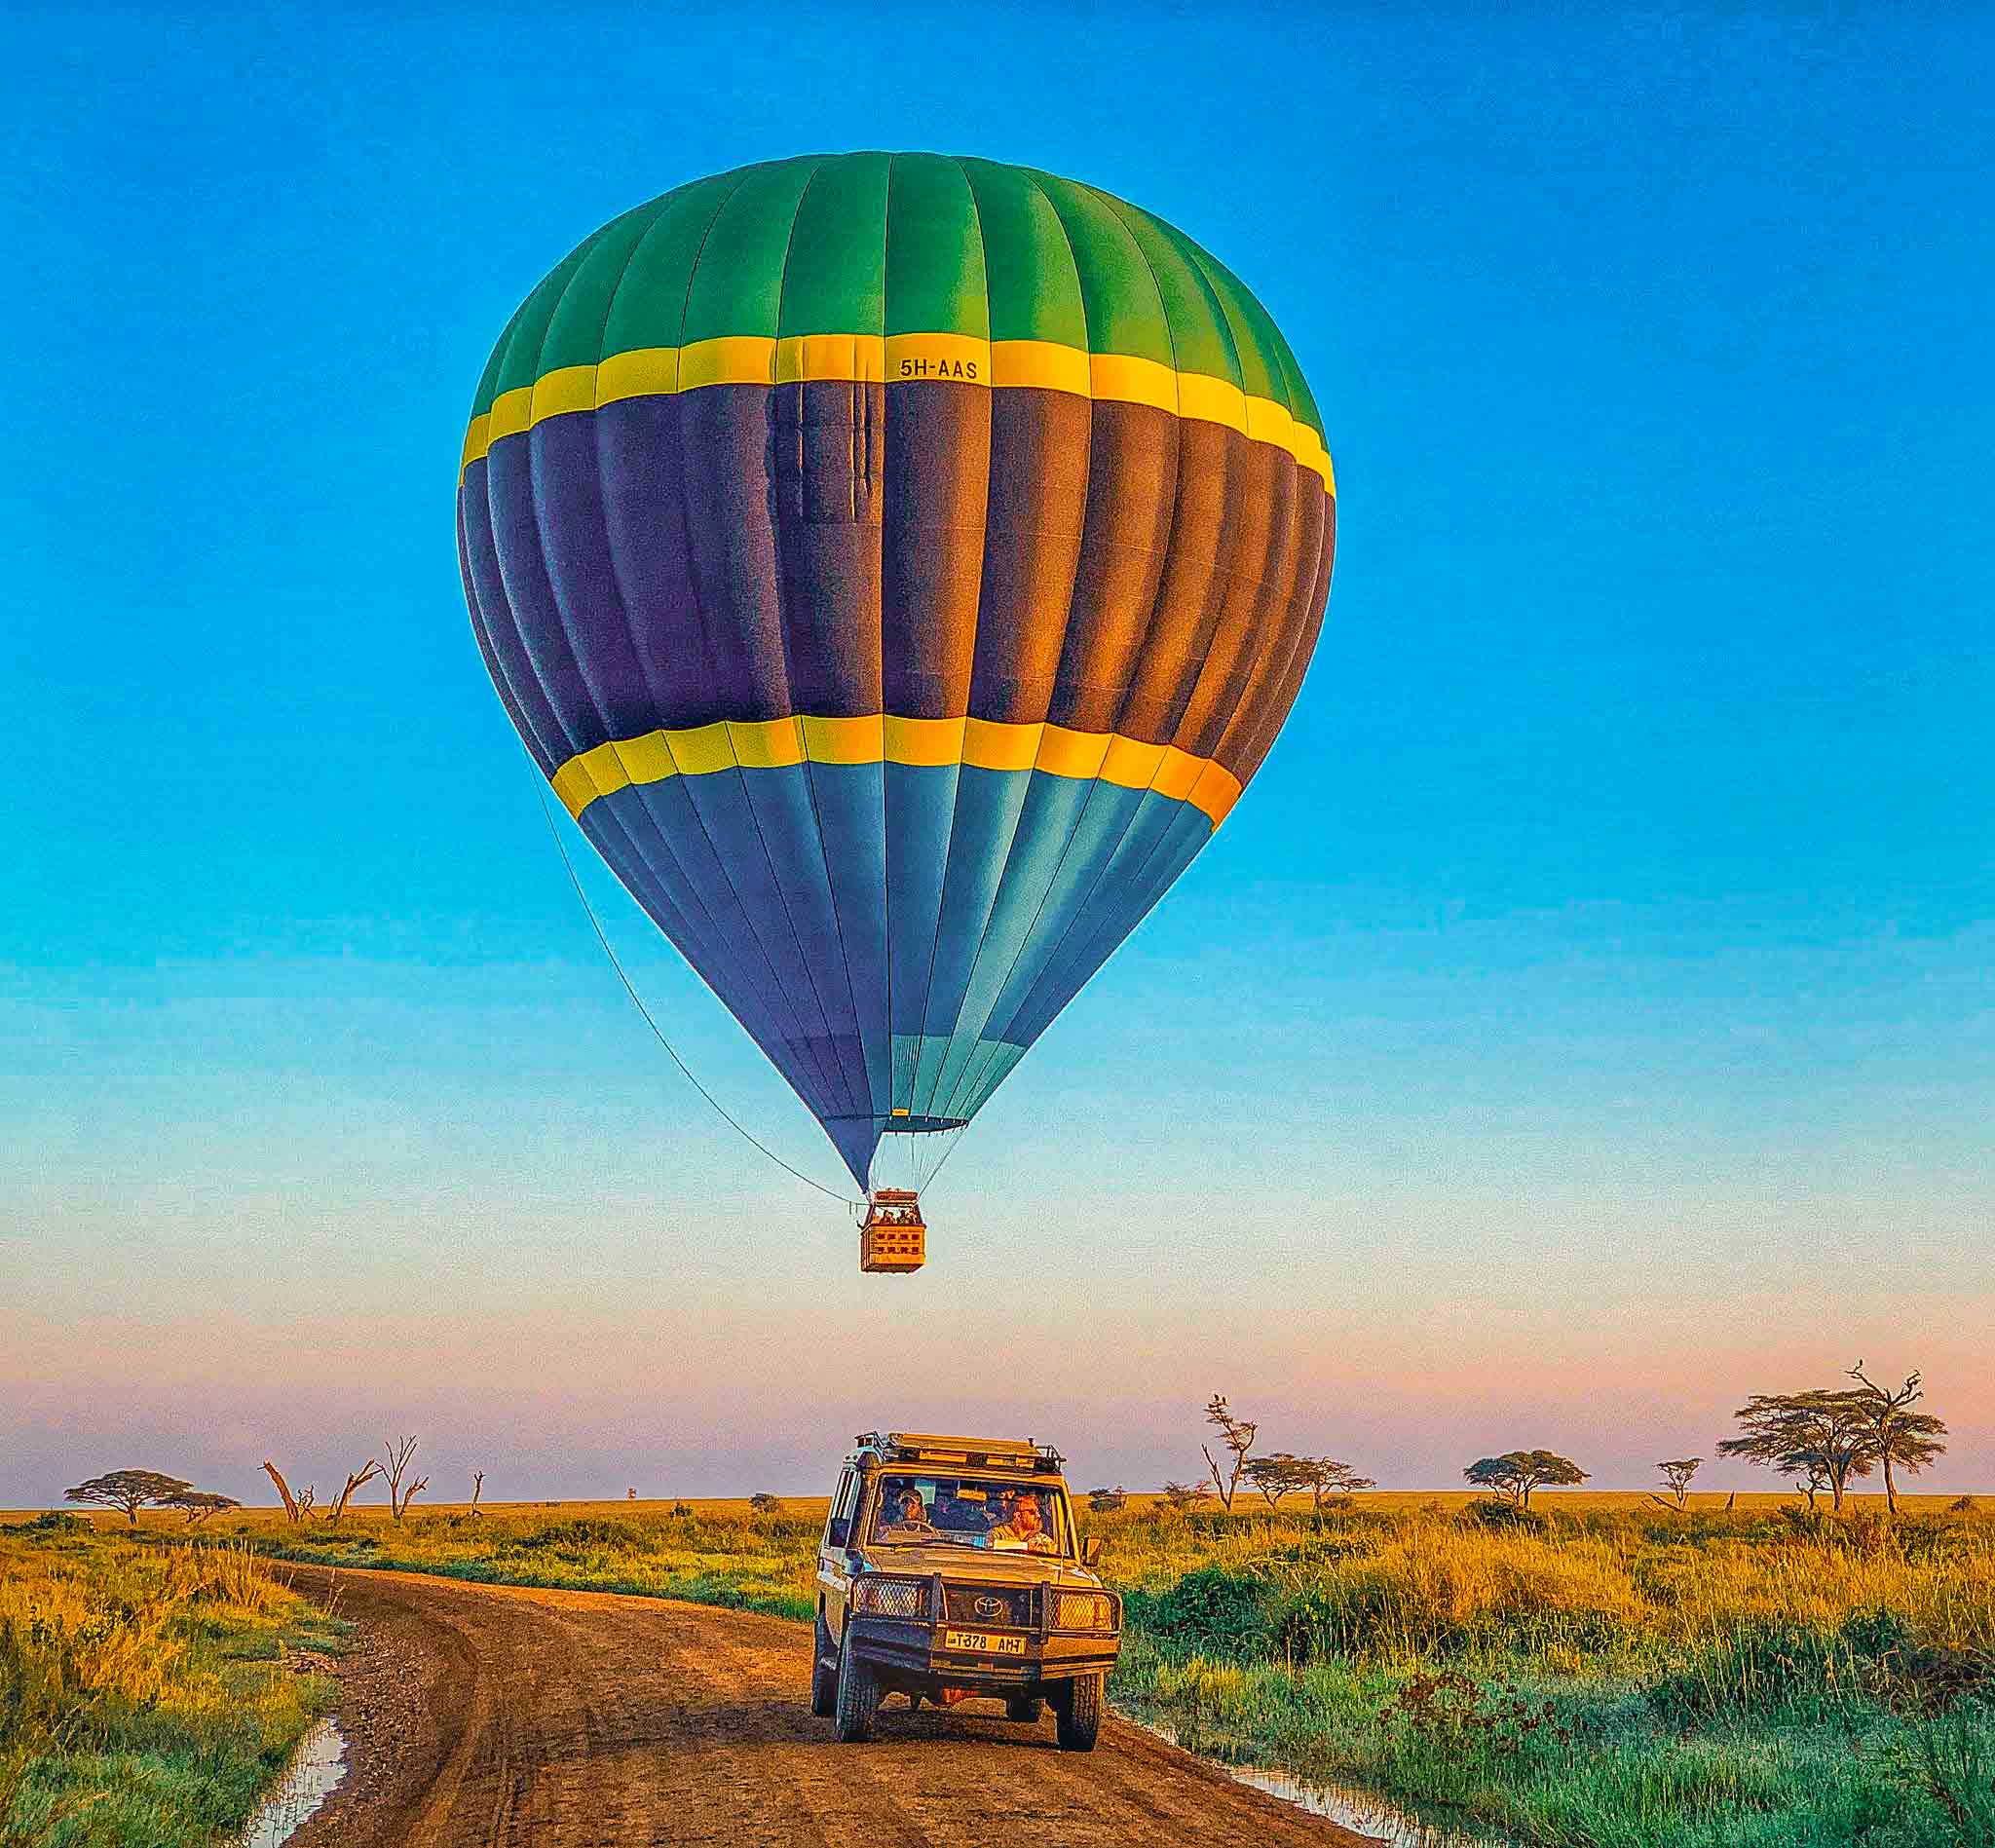 A hot air balloon in Serengeti National Park